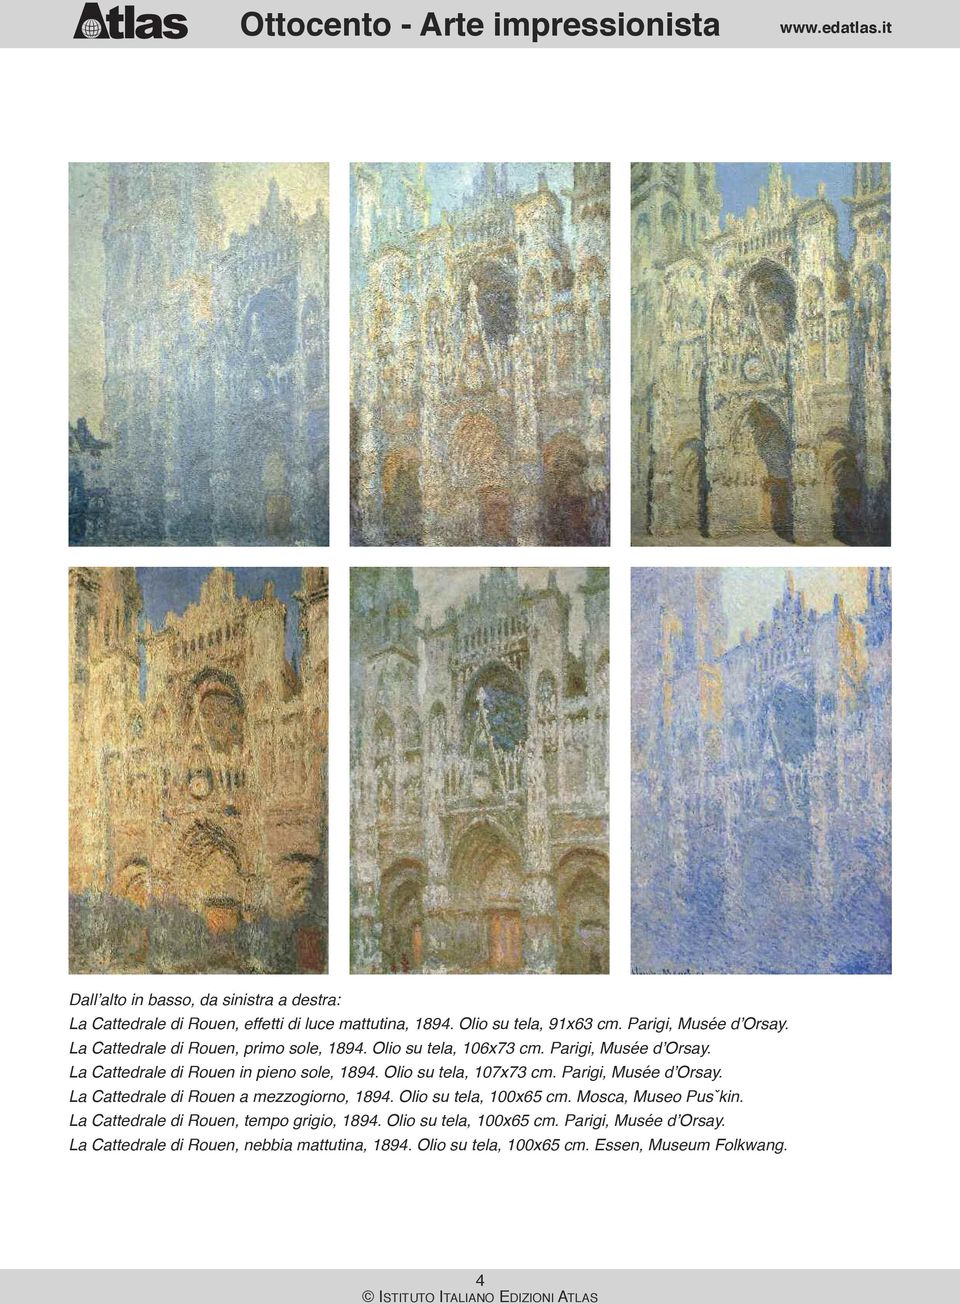 Olio su tela, 107x73 cm. Parigi, Musée d Orsay. La Cattedrale di Rouen a mezzogiorno, 1894. Olio su tela, 100x65 cm. Mosca, Museo Pusˇkin.